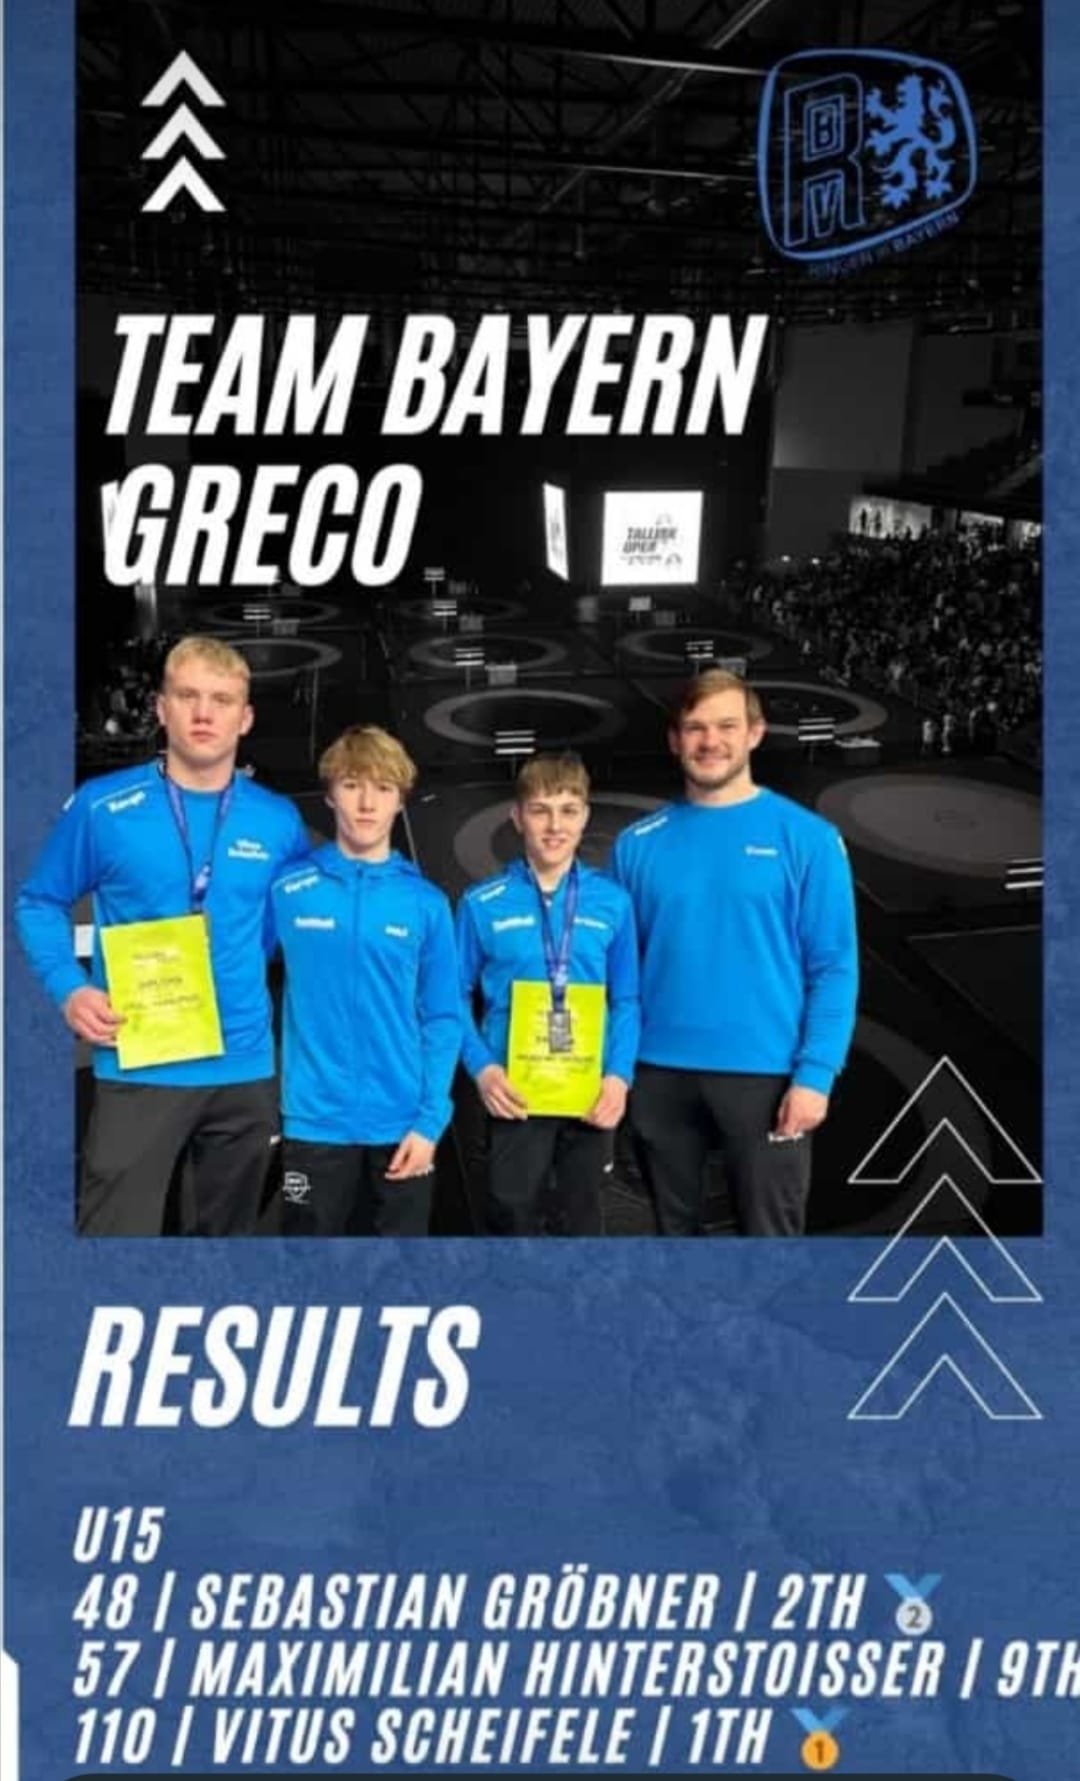 Das Bayerische Greco-Team Vitus Scheifele, Maximilian Hinterstoißer, Sebastian Gröbner und Trainer Matthias Baumeister ((C) Matthias Baumeister).